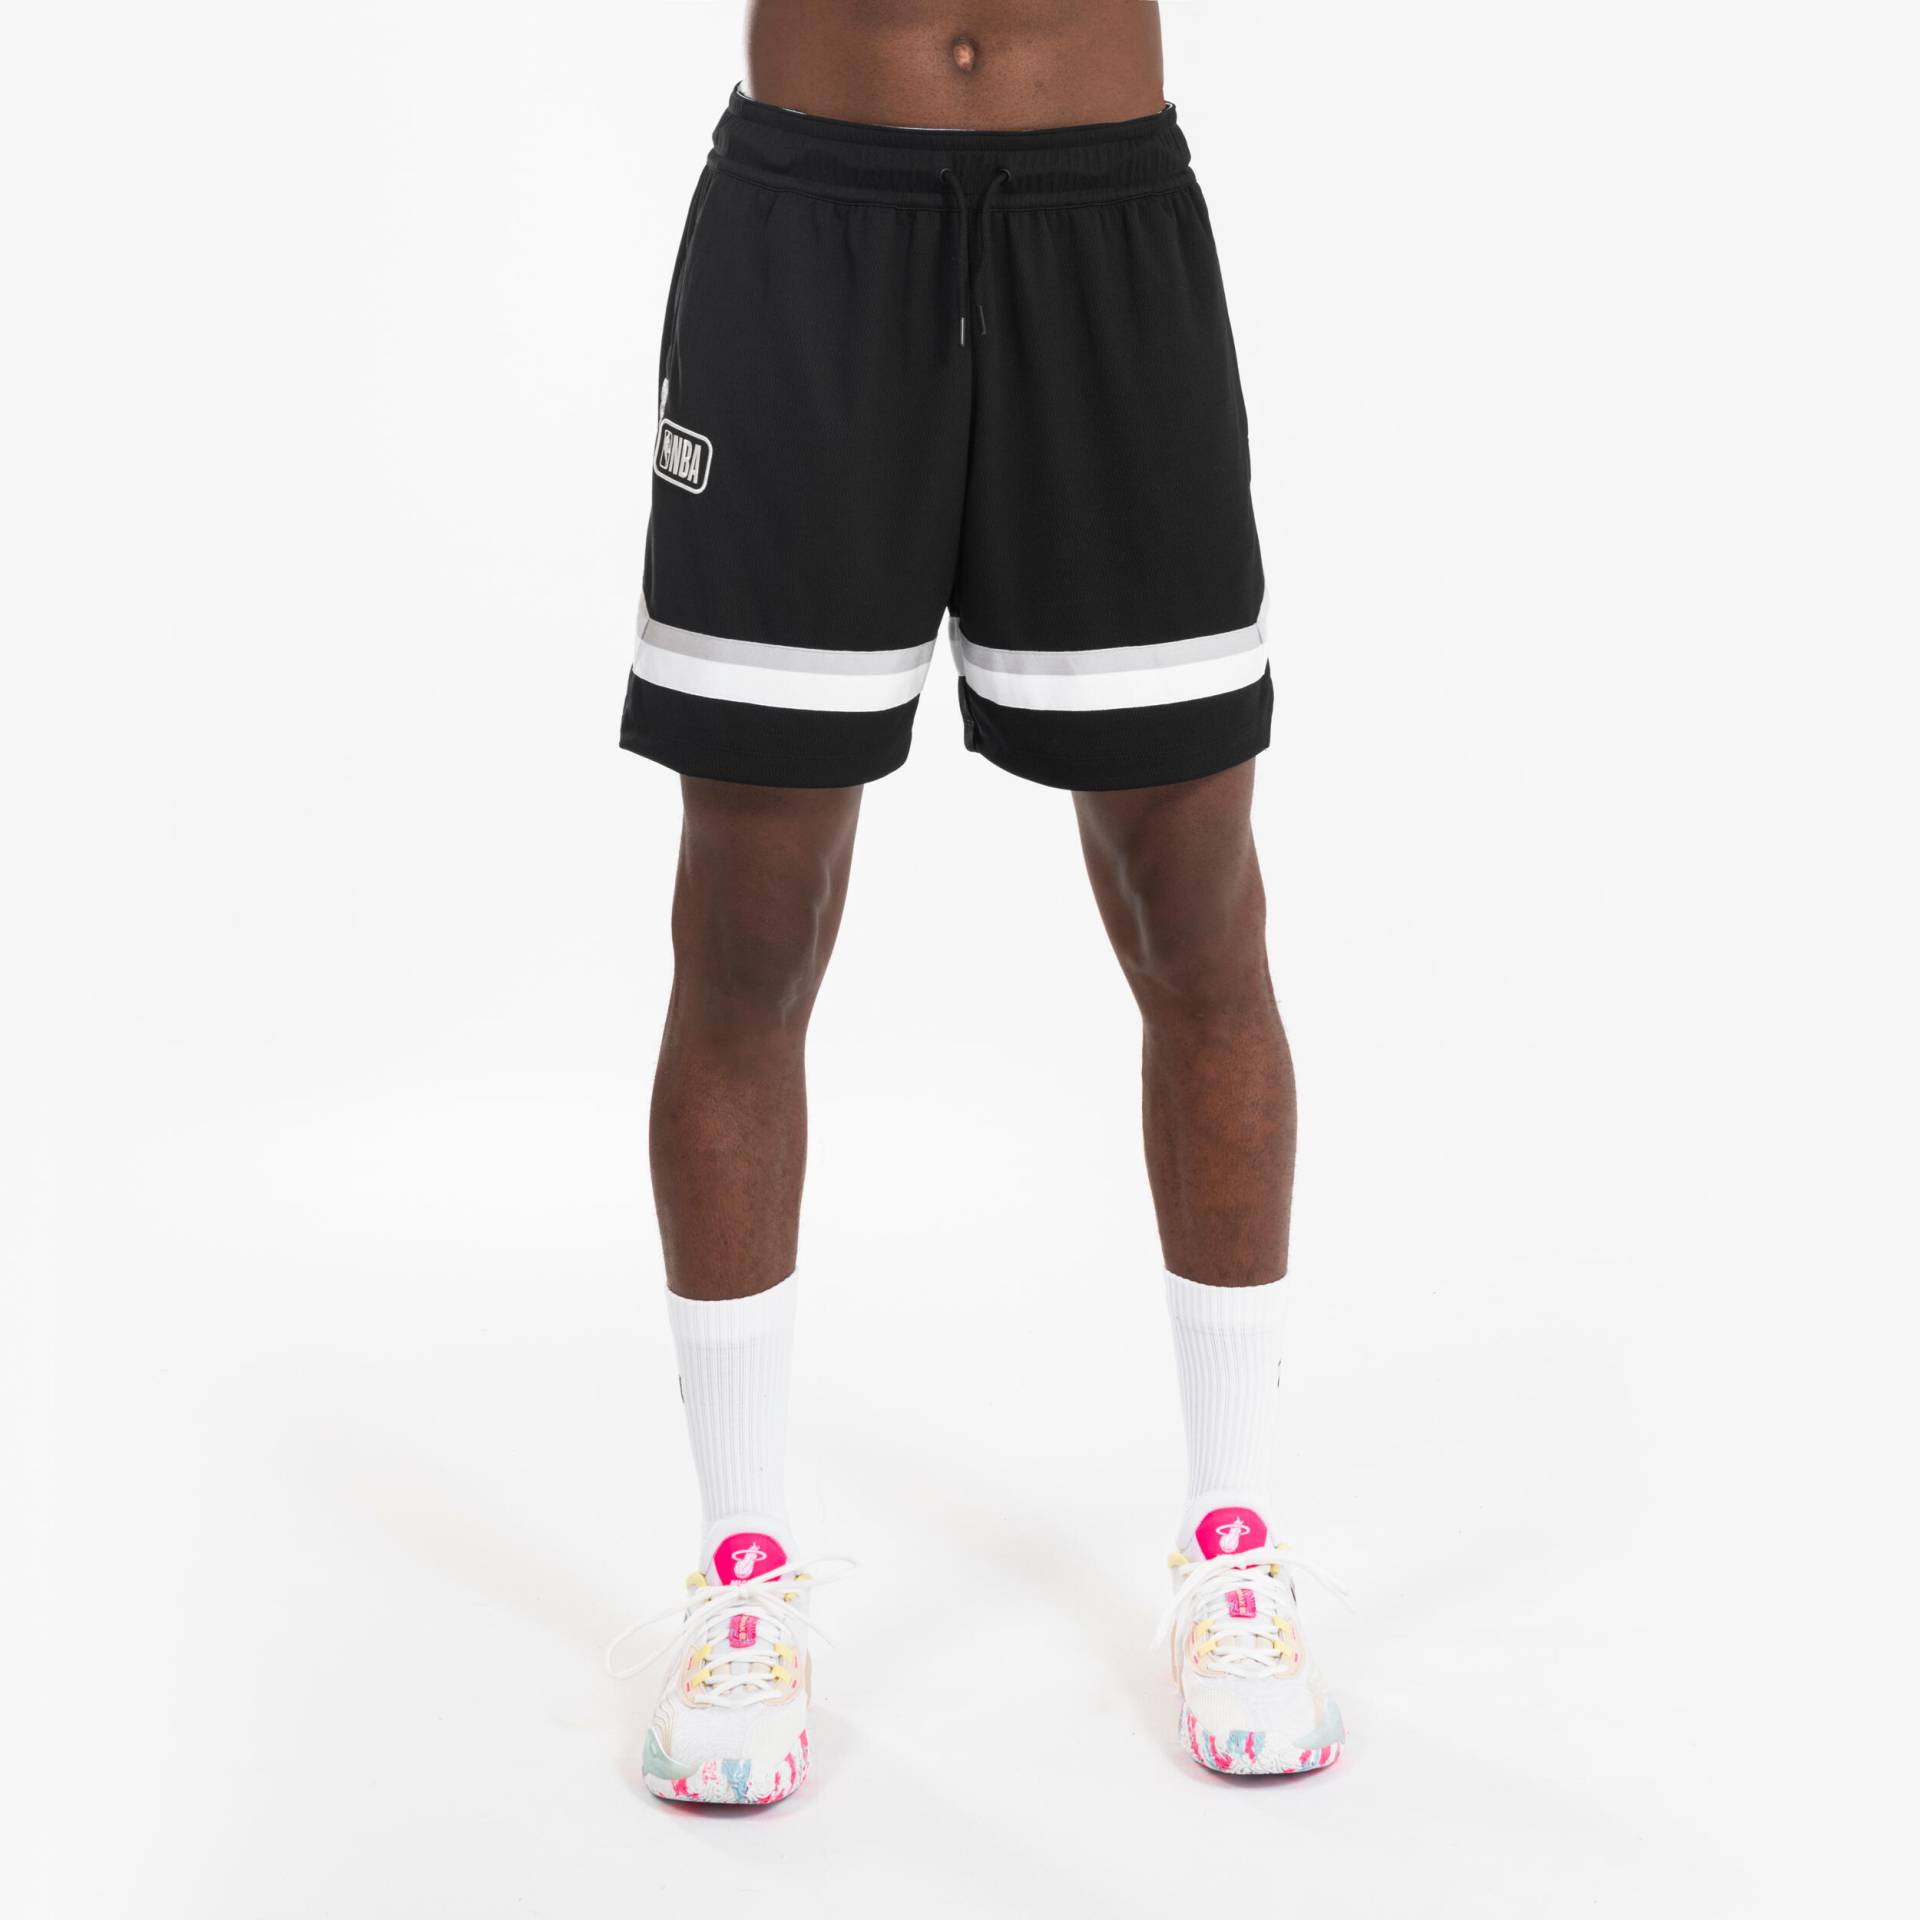 Damen/Herren Shorts Basketball NBA - SH 900 schwarz von TARMAK